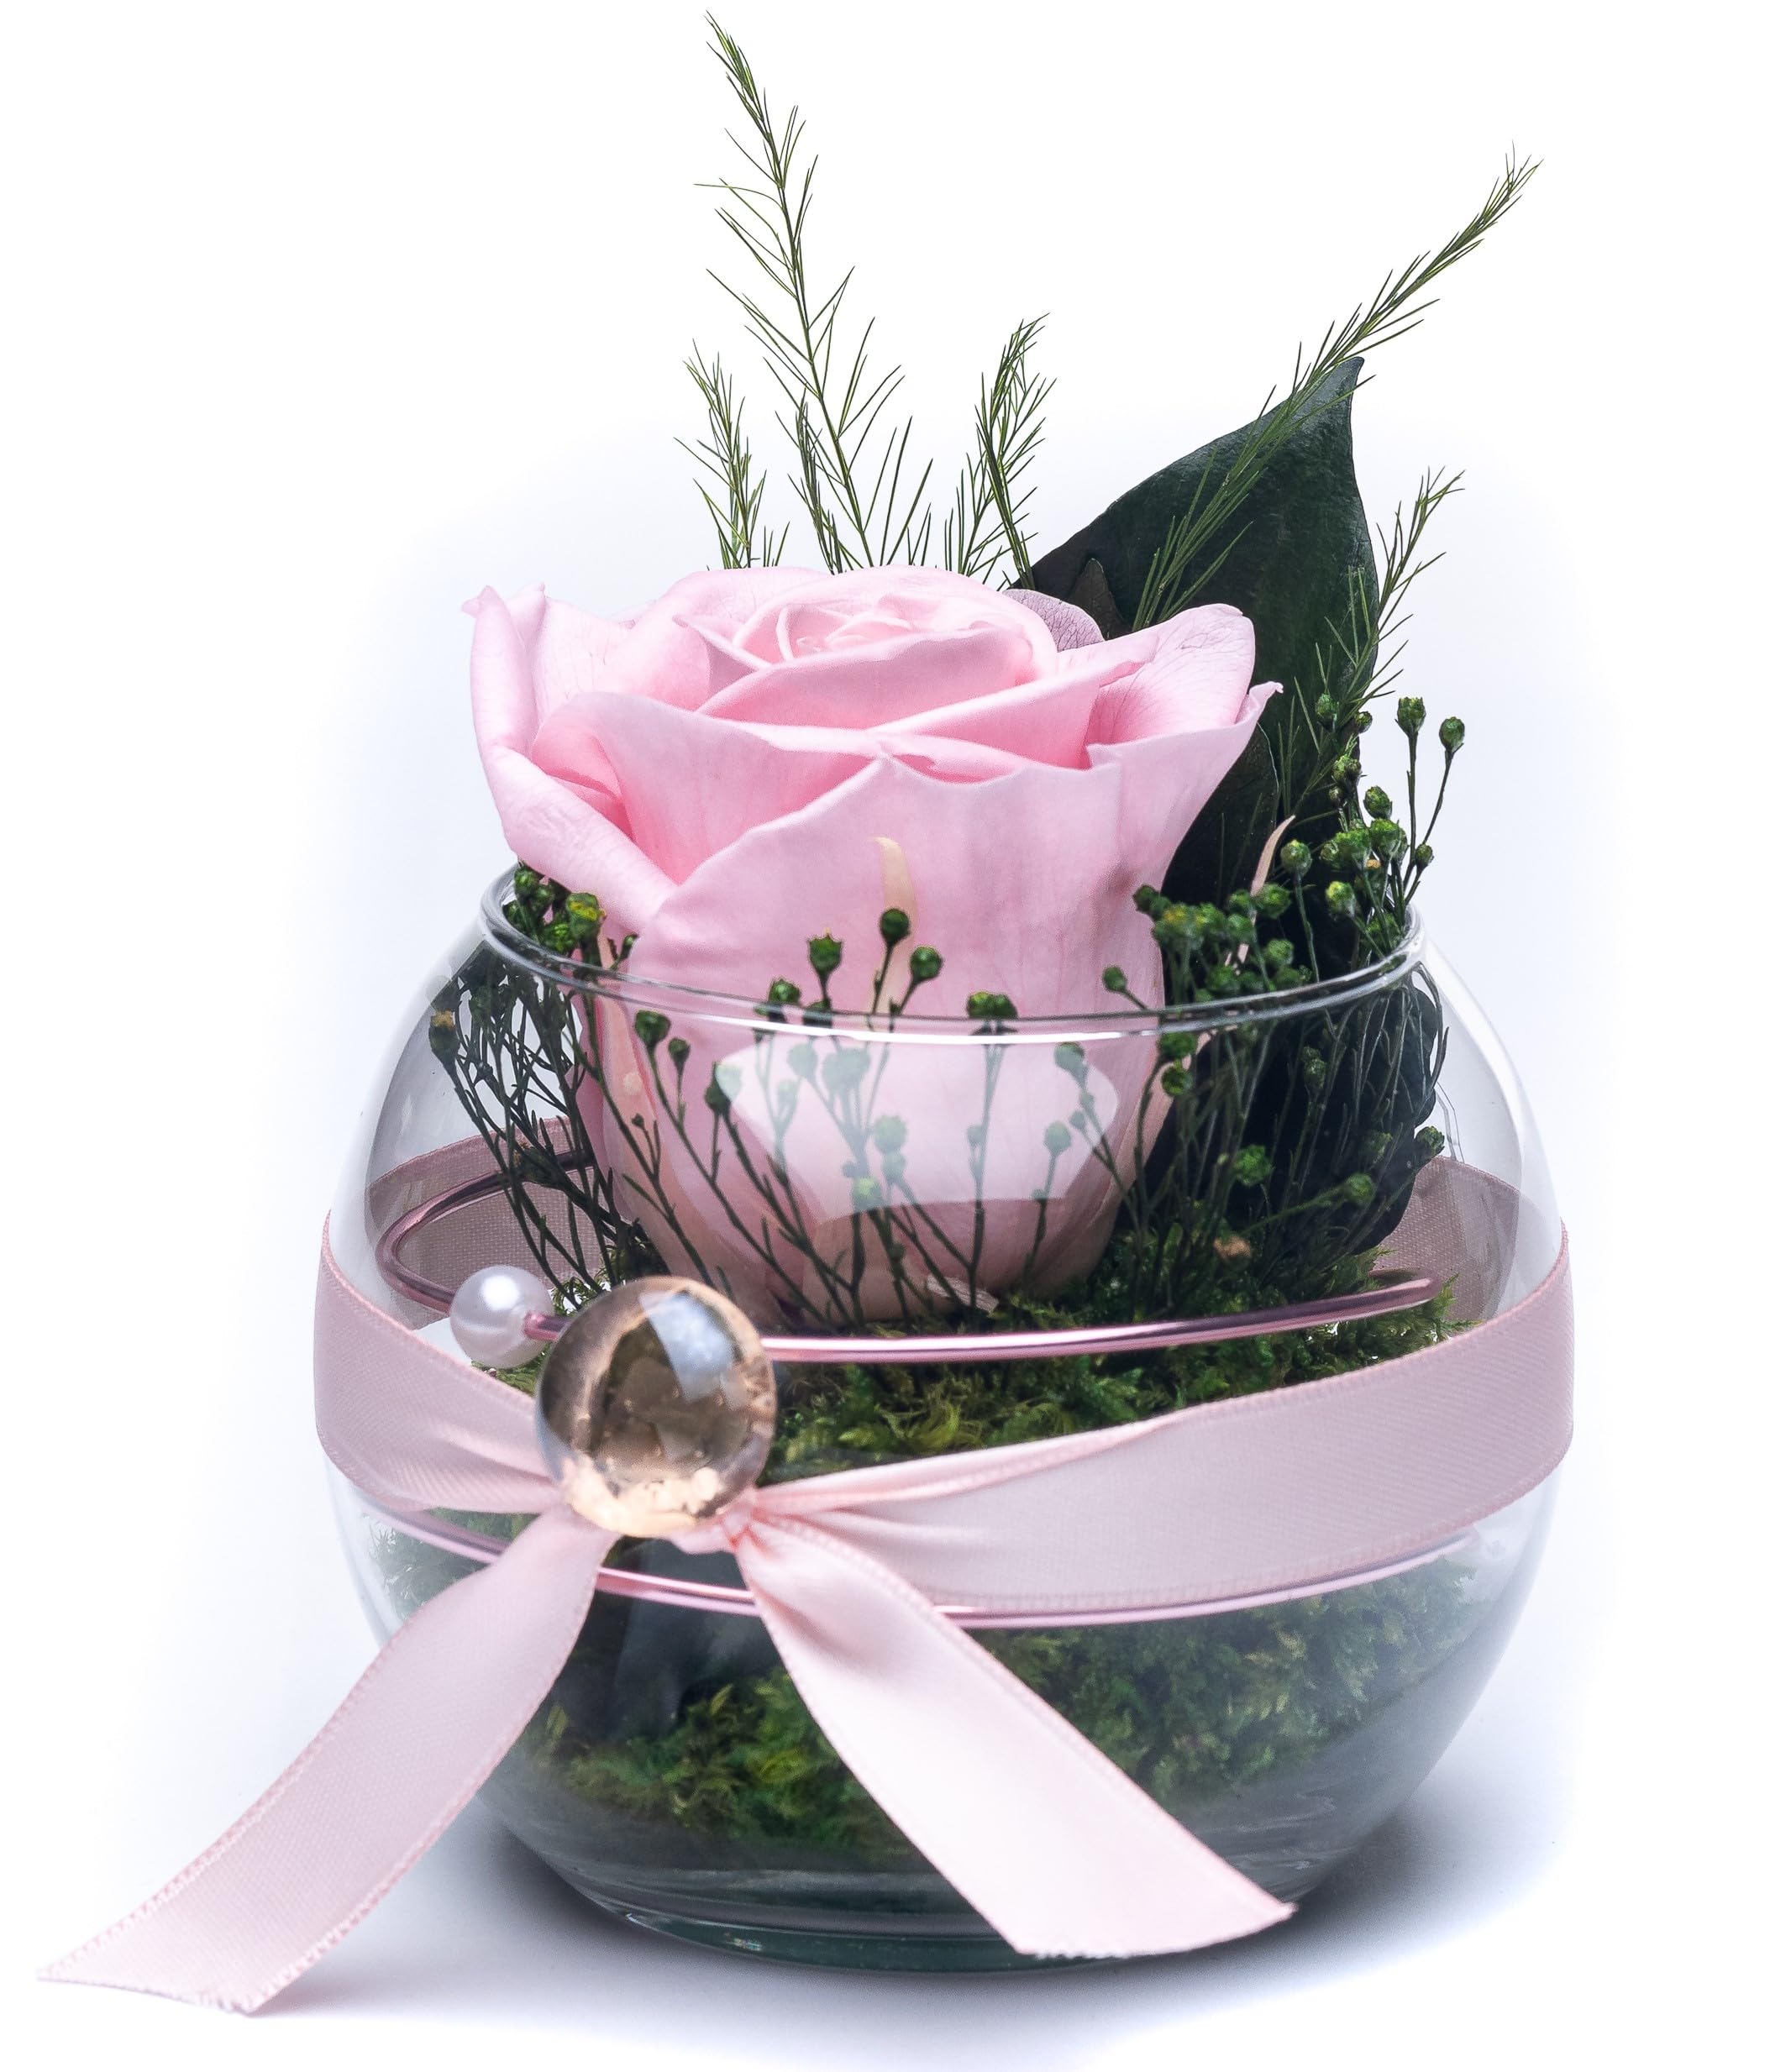 Rosen-Te-Amo | Muttertag Infinity Rosen | premium konservierte ewige Rose im Glas-Vase | duftend | handgefertigt mit echten Deko-Foliage | feines Design | Geburtstagsgeschenk Frauen Mama Freundin Oma